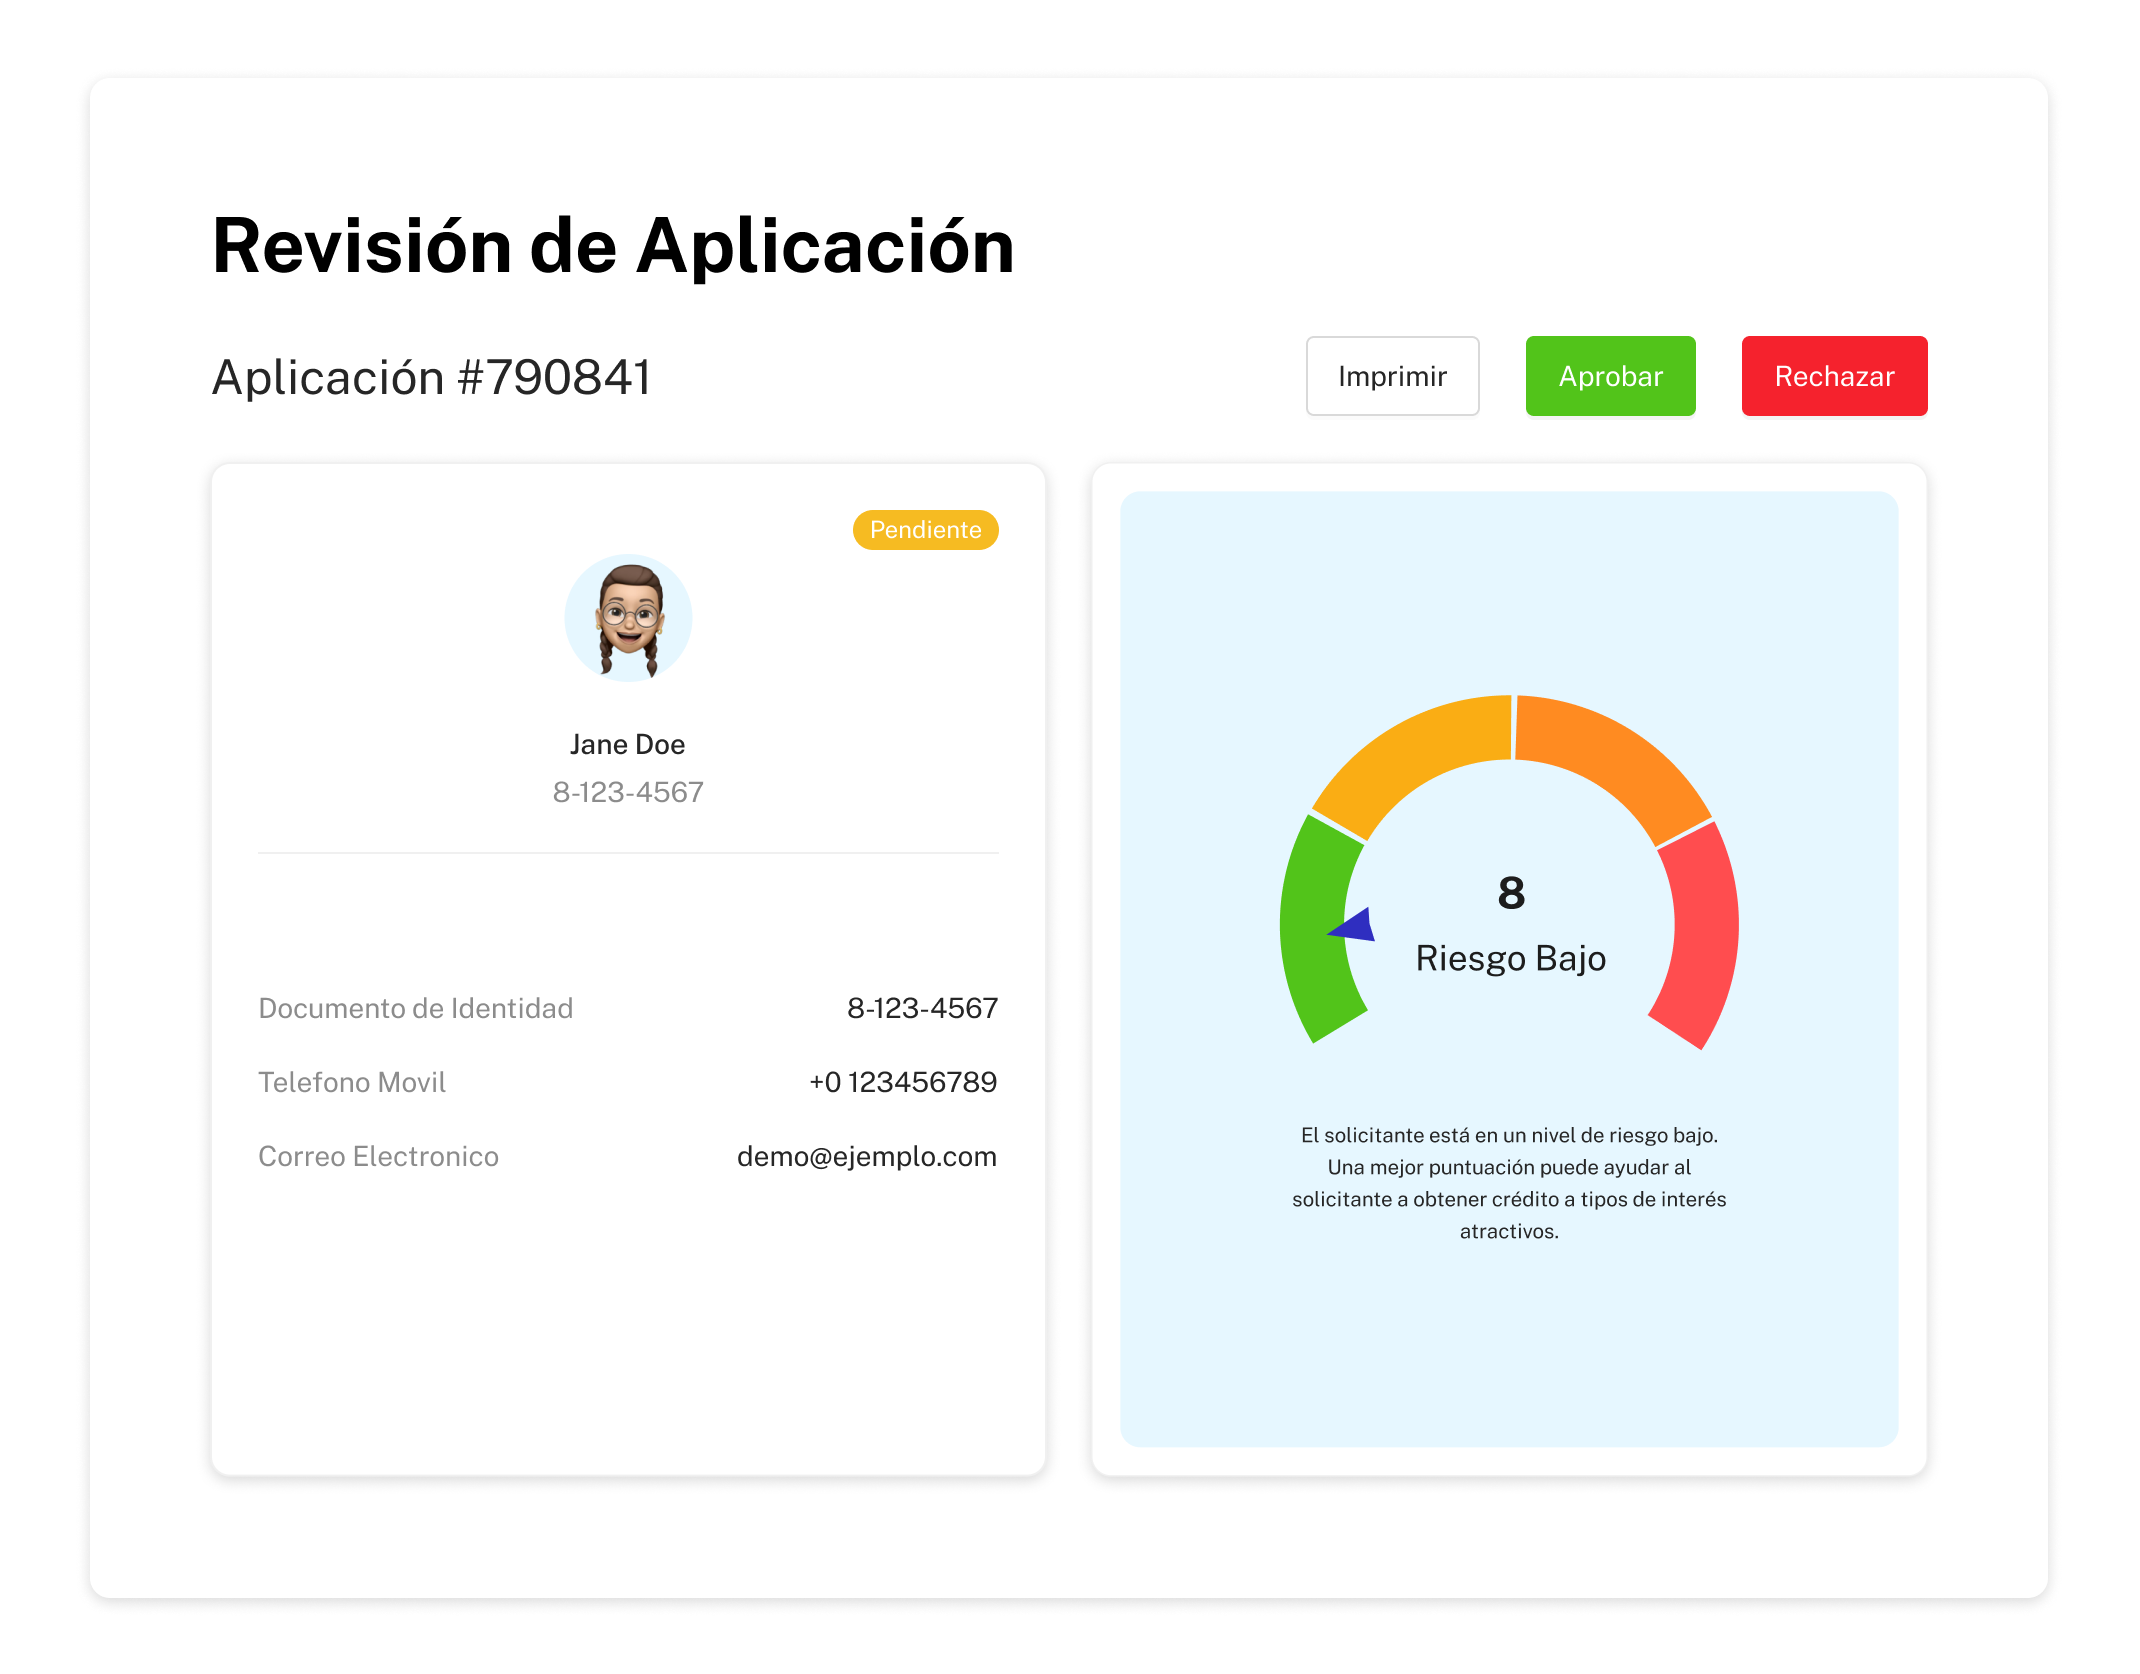 Vistazo de como se ve parte de la pagina de “revisión de aplicación” que muestra datos generales y la calificación de riesgo del usuario